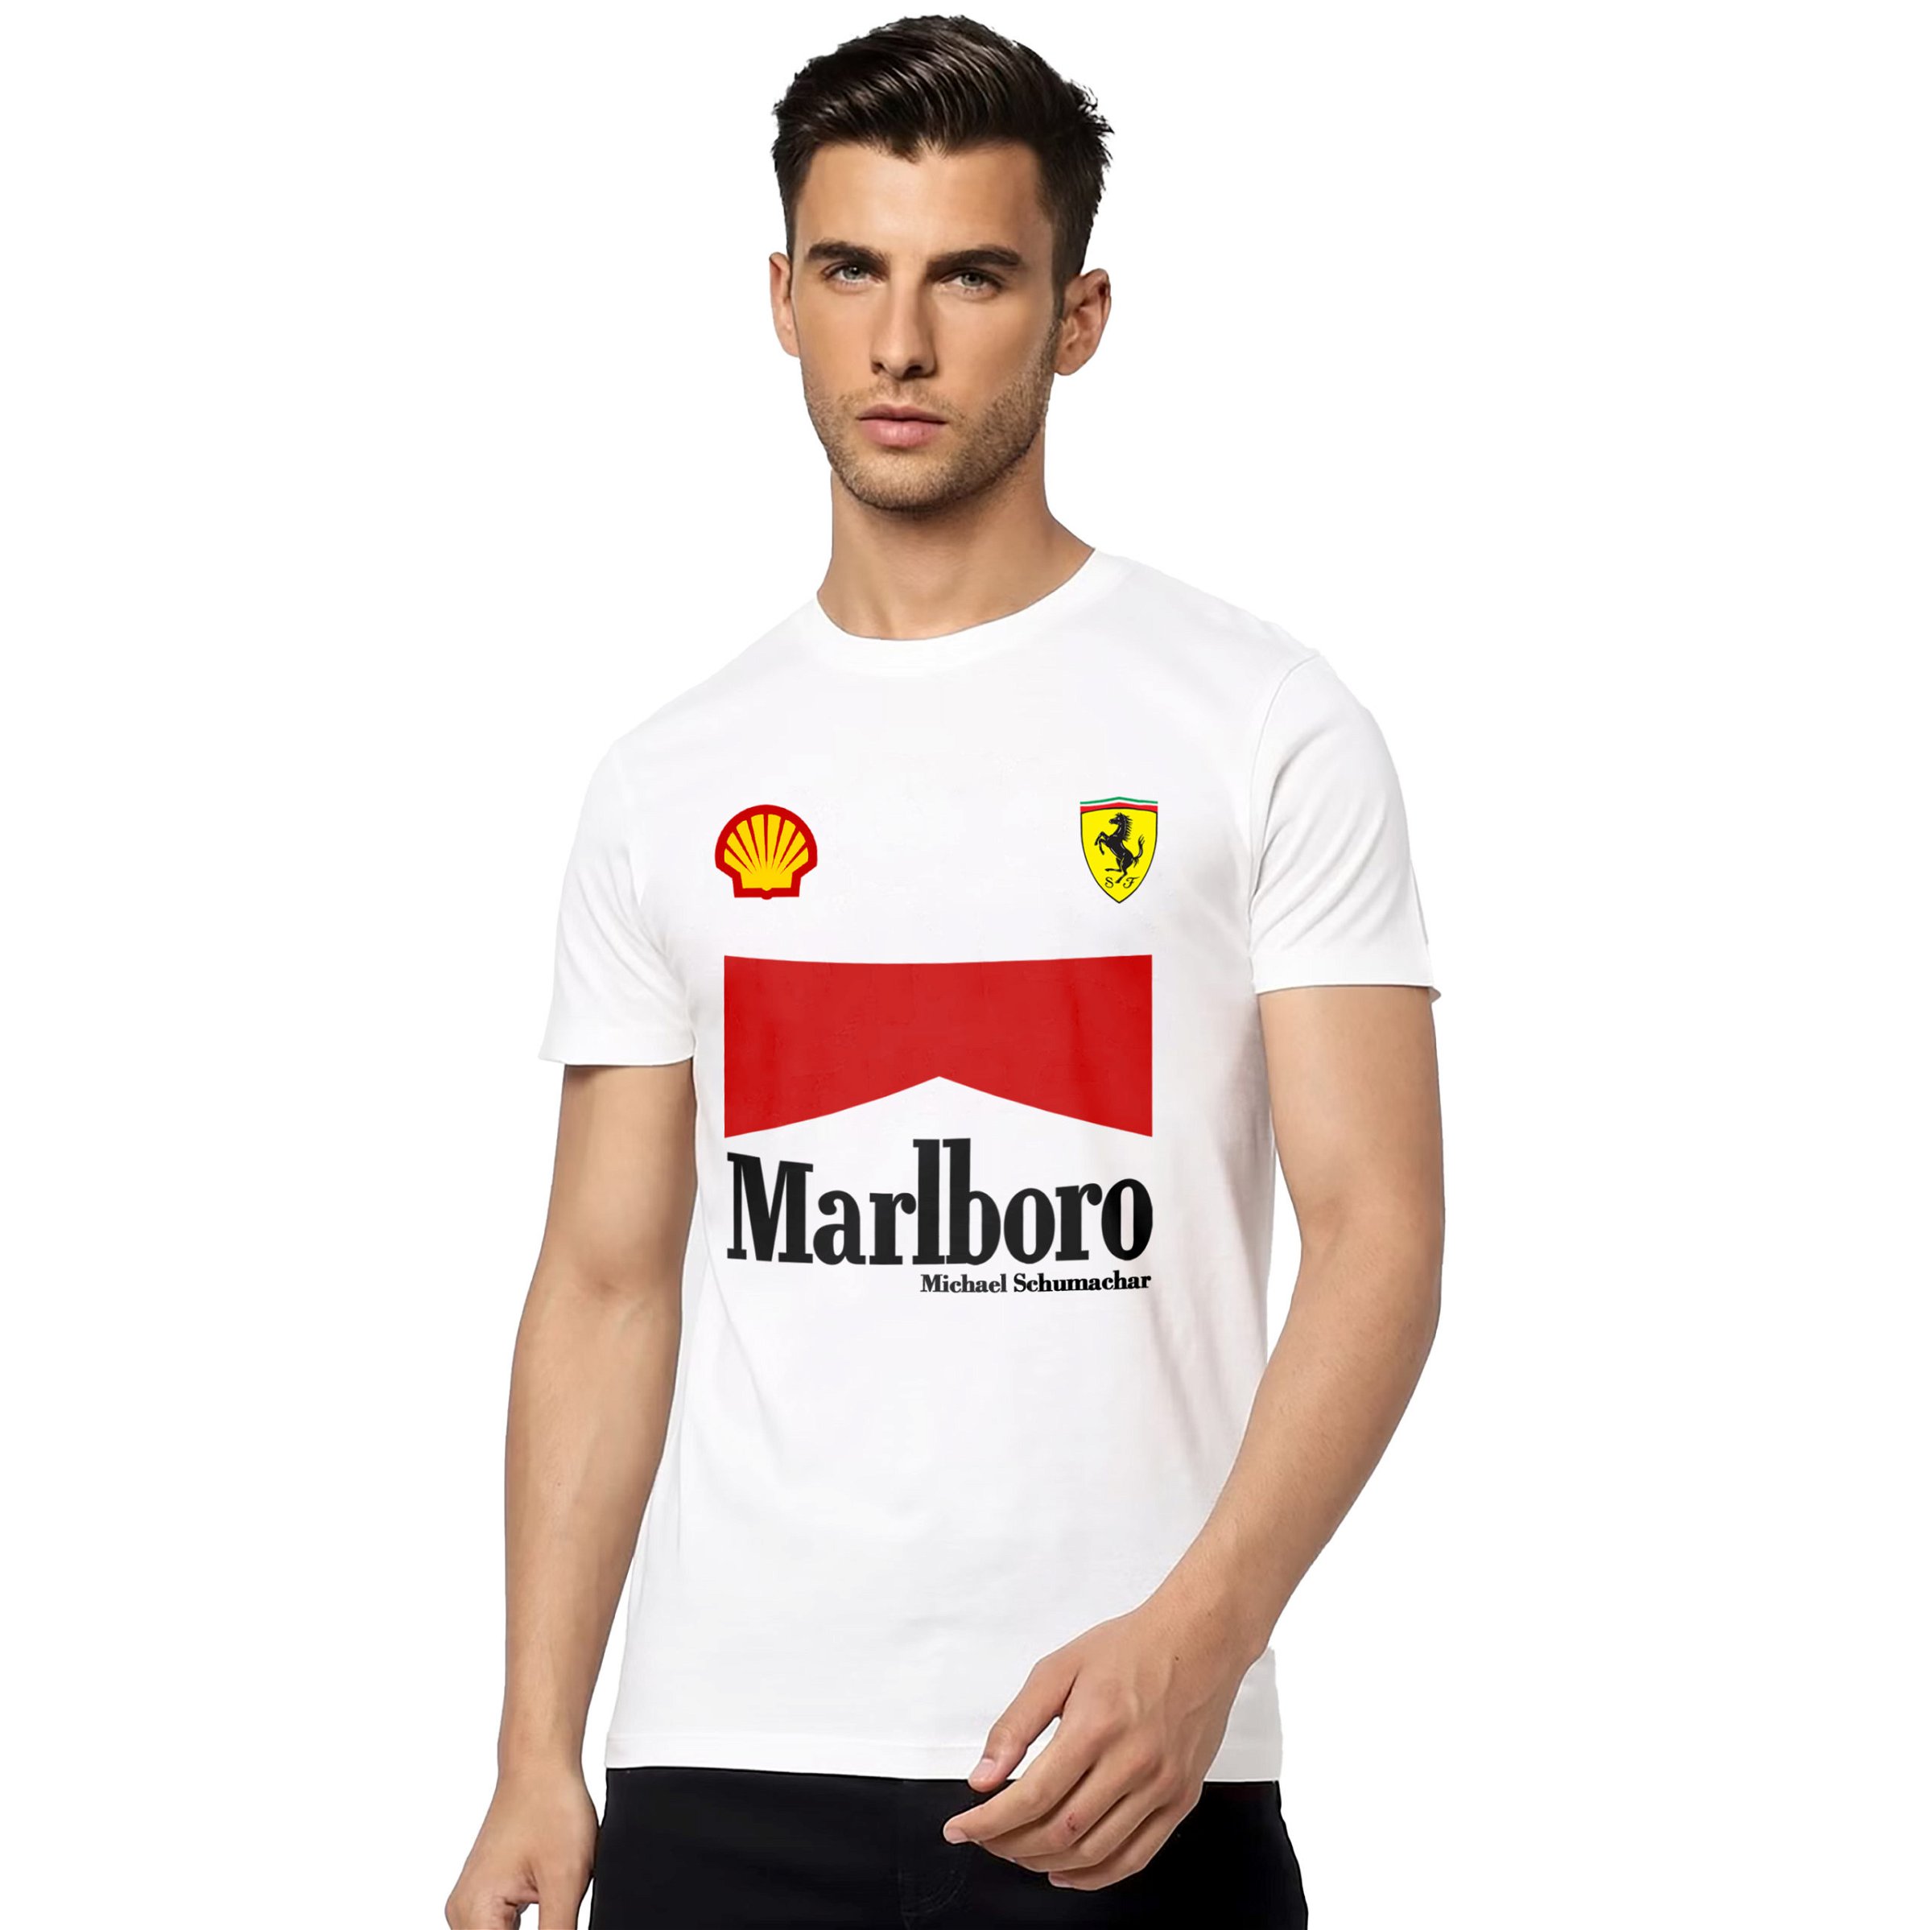 Marlboro White T-shirt - NEBULA STORE - Buy in India